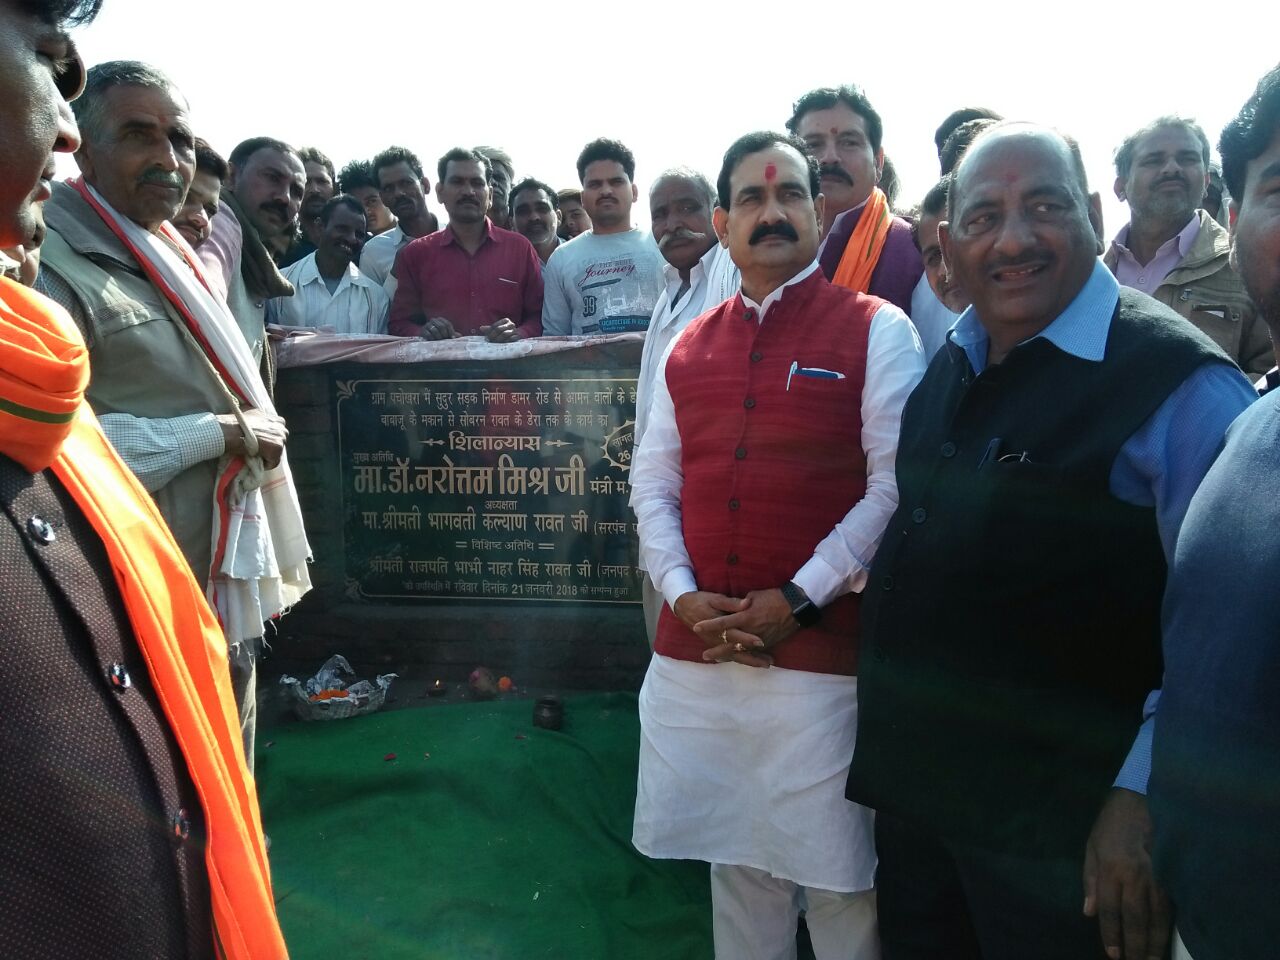 मध्य प्रदेश शासन के जल संसाधन जनसंपर्क एवं संसदीय कार्य मंत्री डॉ नरोत्तम मिश्रा ने ग्राम पचोखरा में सड़क निर्माण का किया भूमि पूजन | New India Times